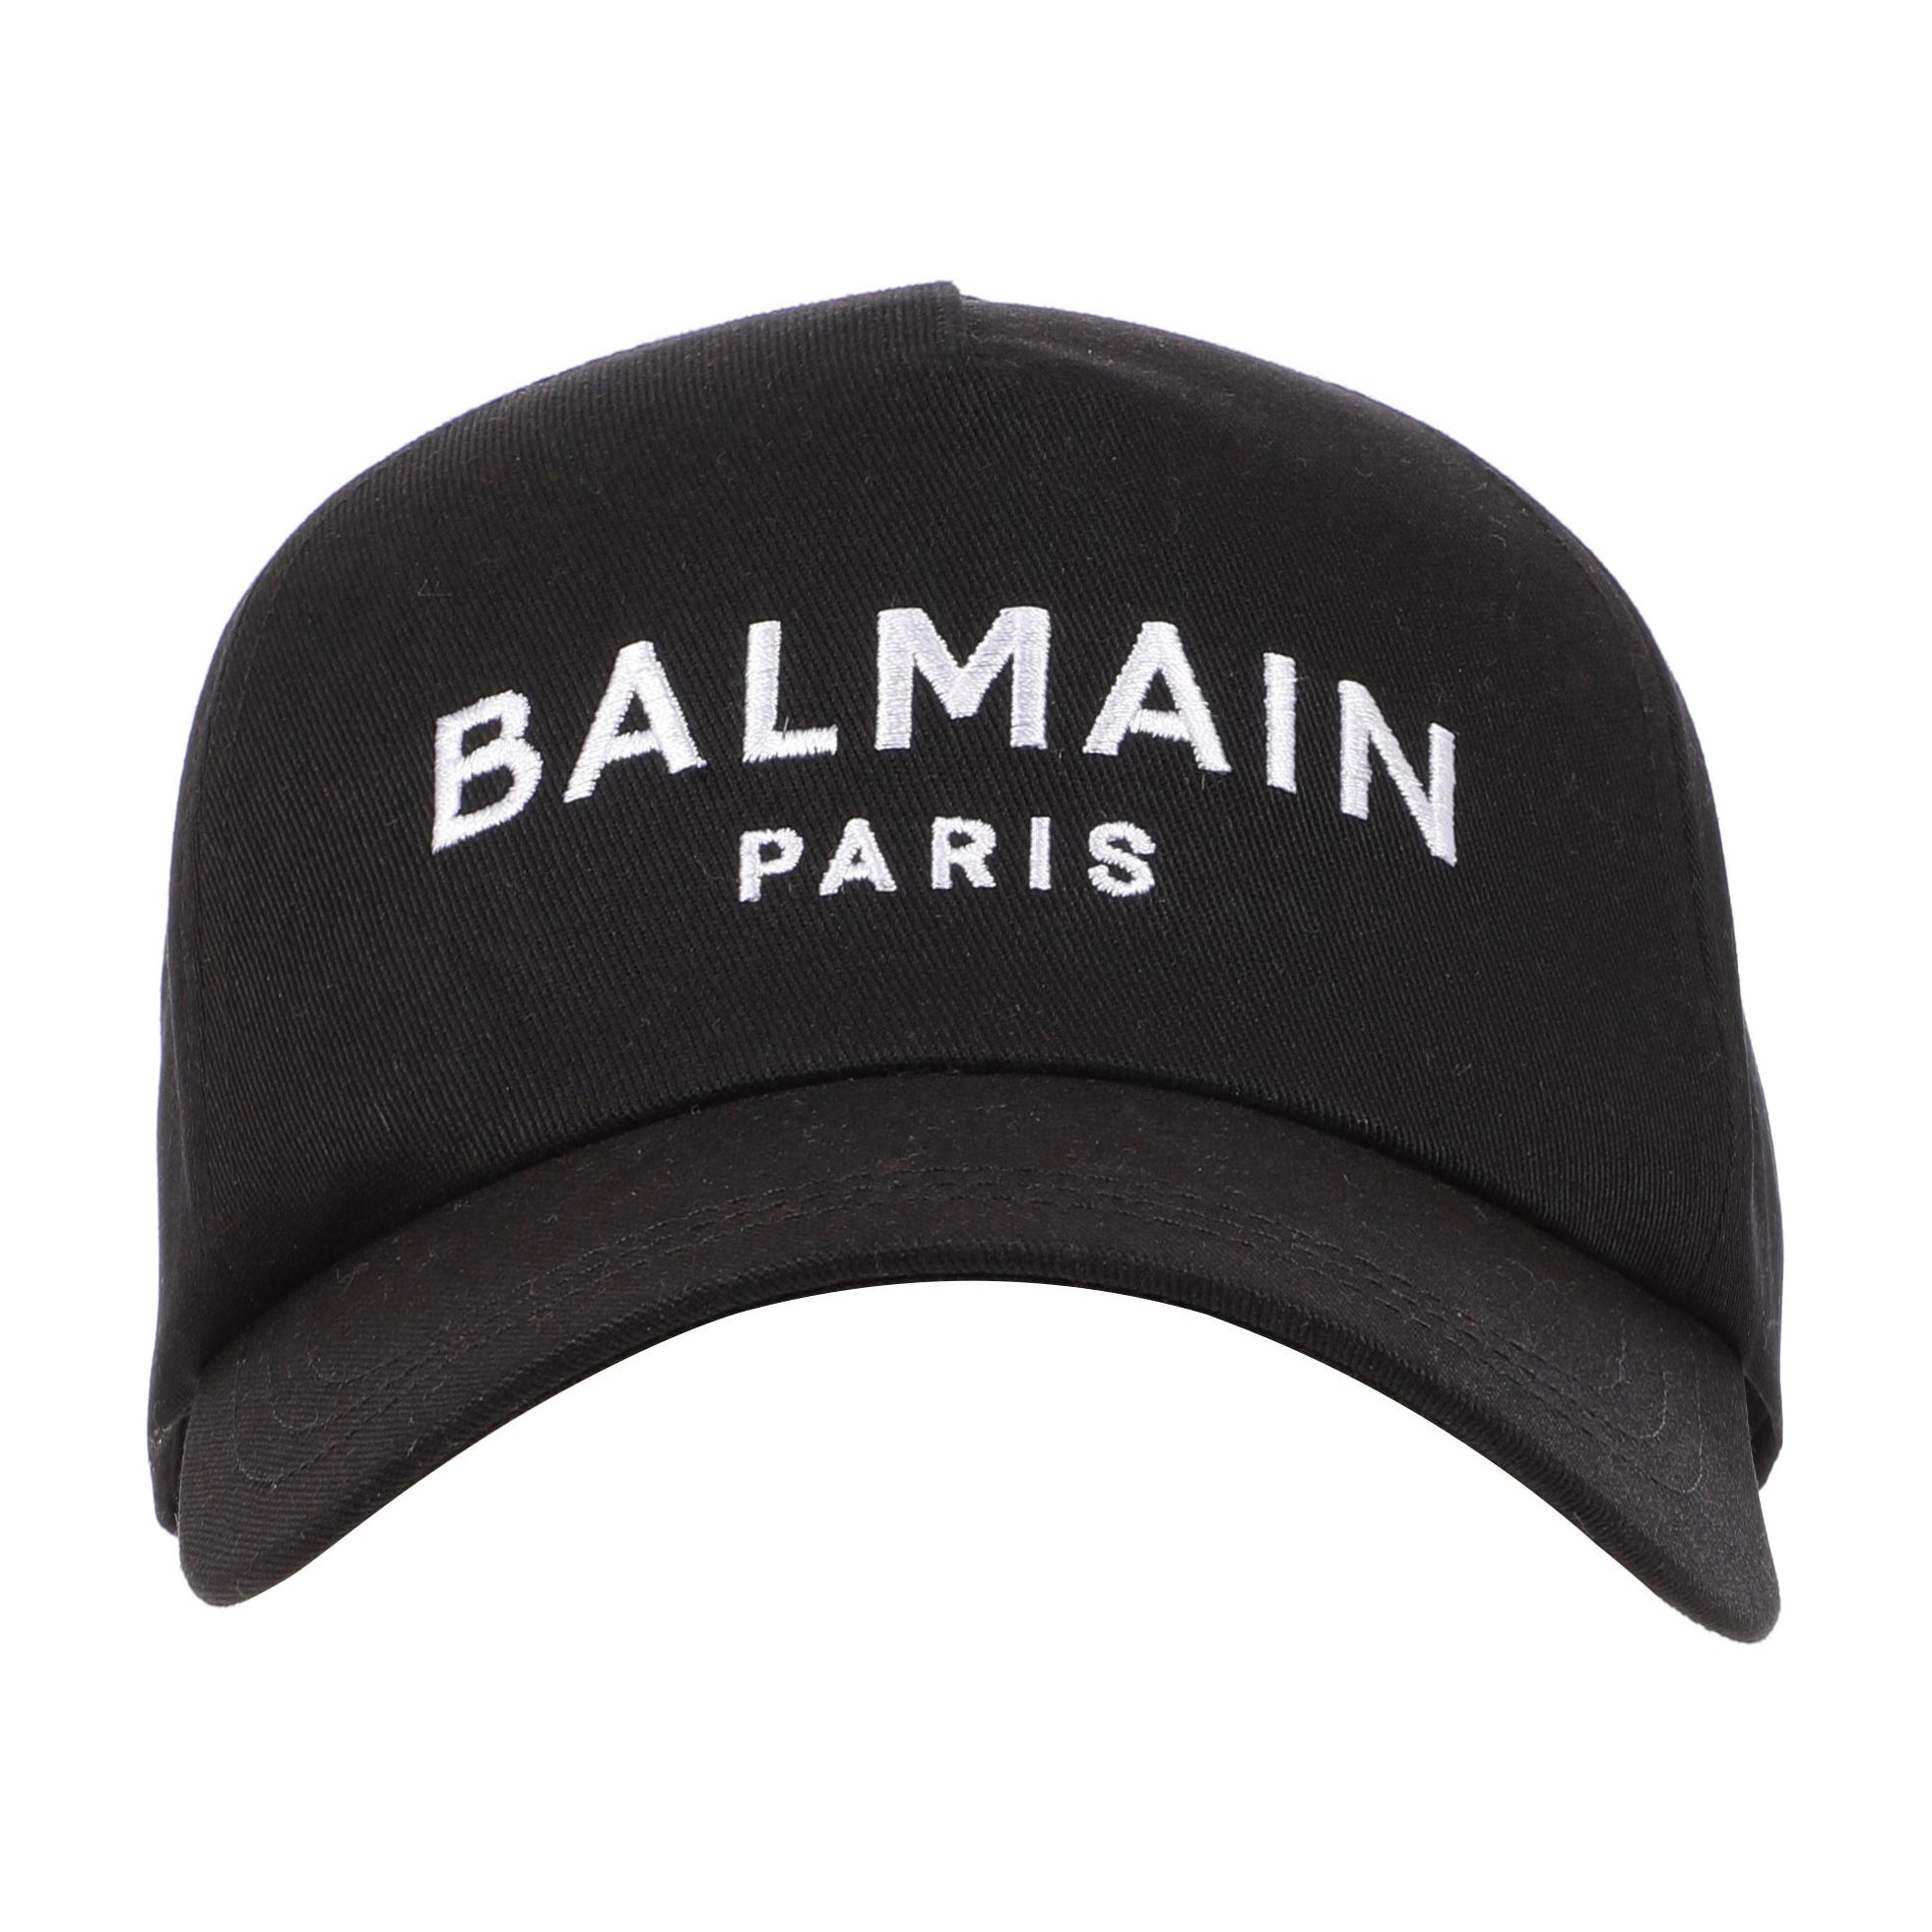 BALMAIN COTTON CAP - BLACK